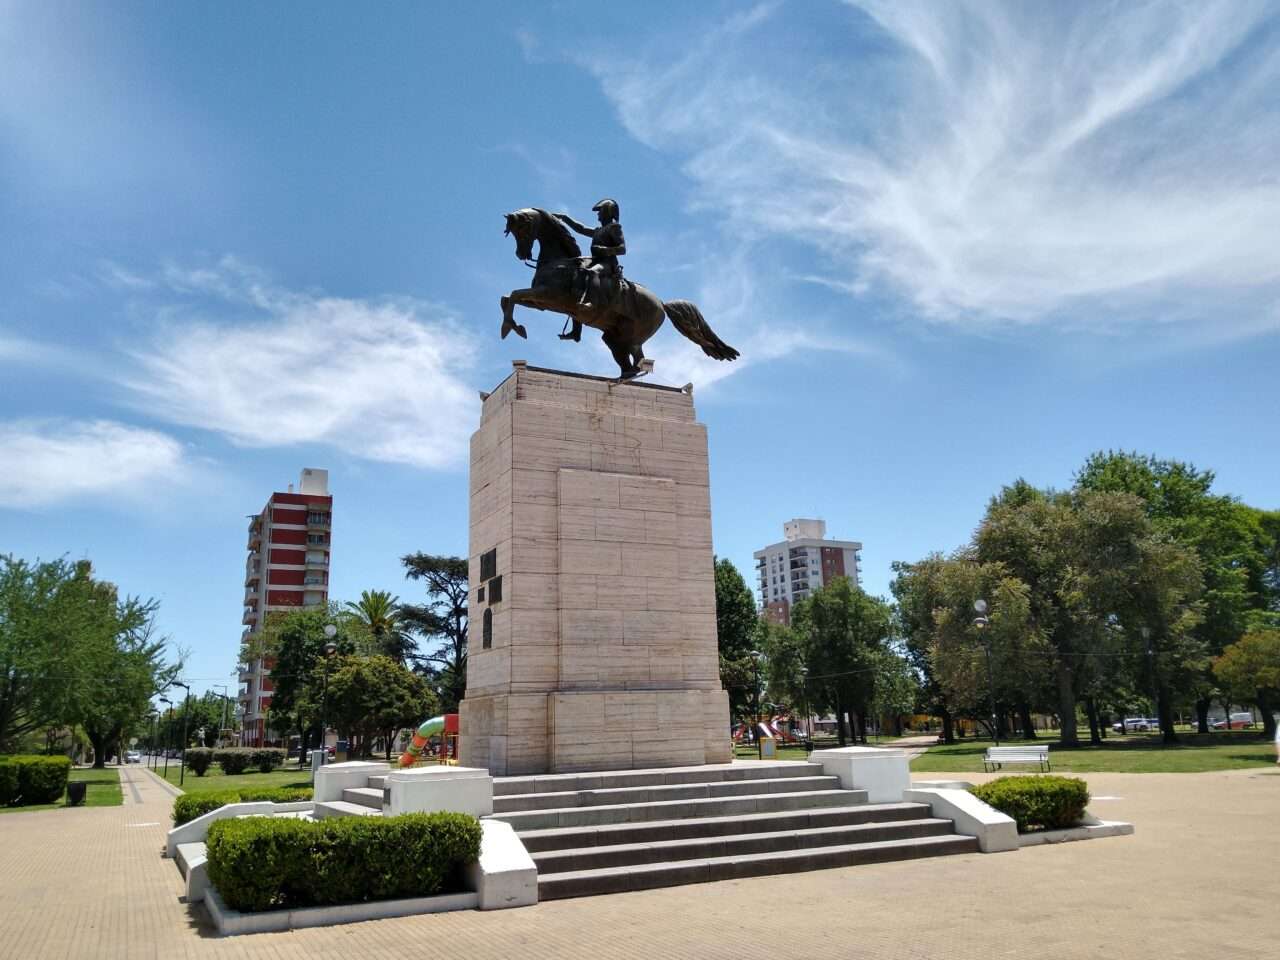 Nuevo hecho de vandalismo: rayaron el monumento central de la plaza San Martín 